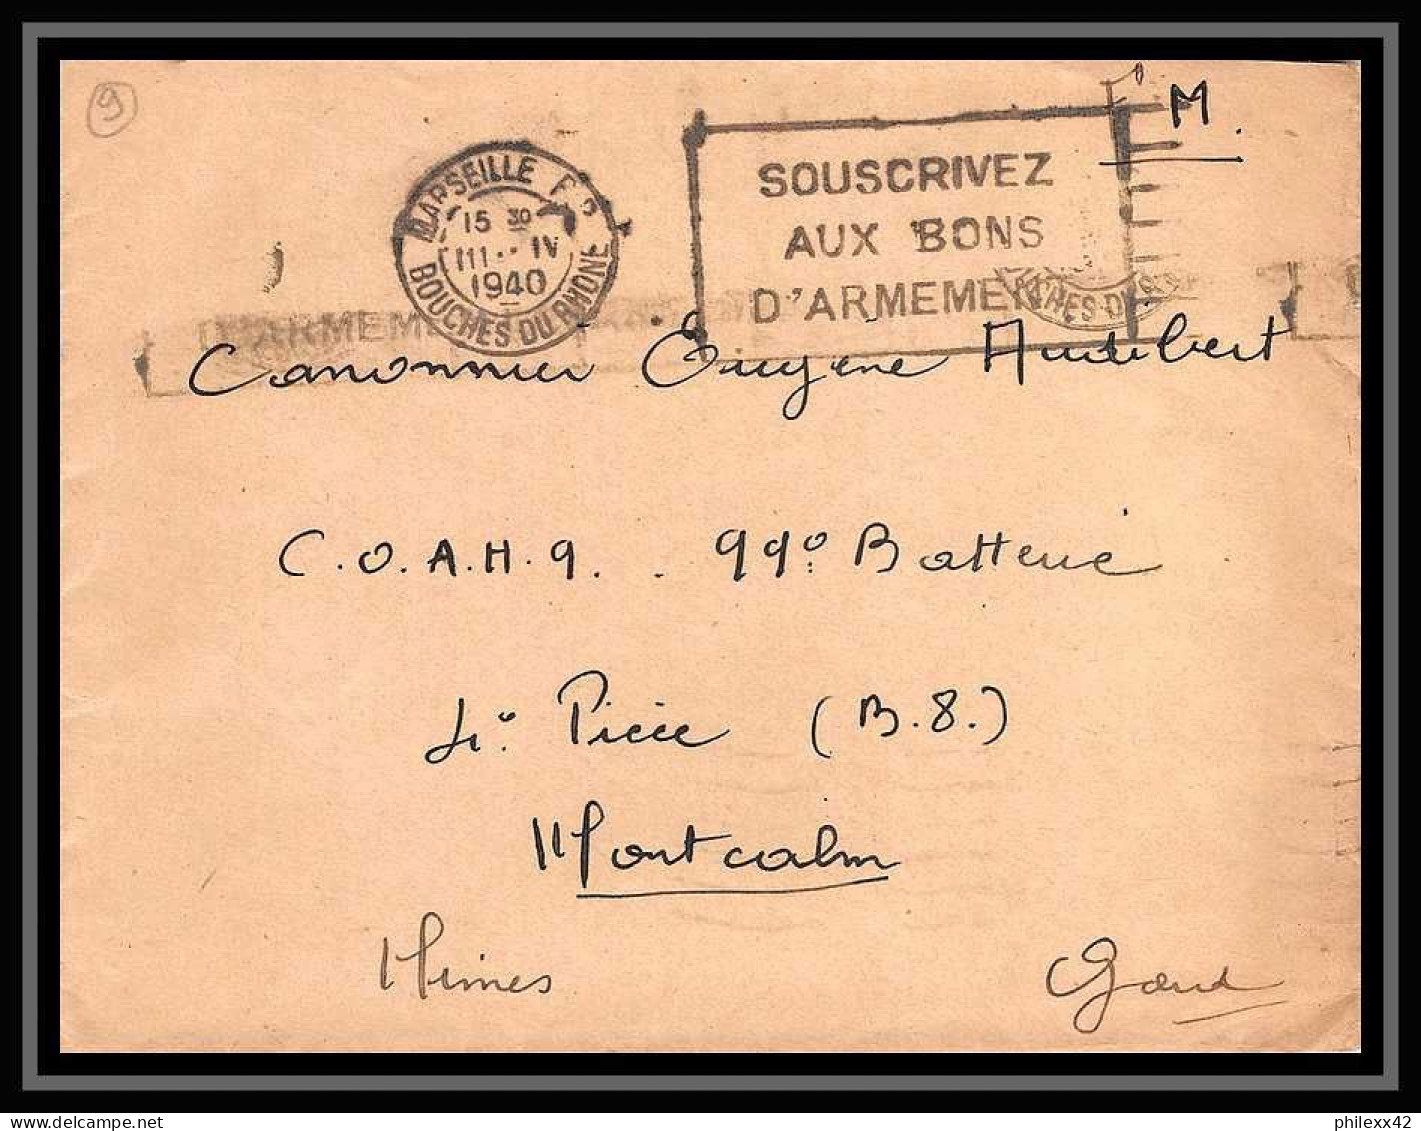 115737 LOT DE + DE 29 Lettres cover Bouches du rhone Marseille Flier secap guerre 1939/1945 affranchissements mécaniques